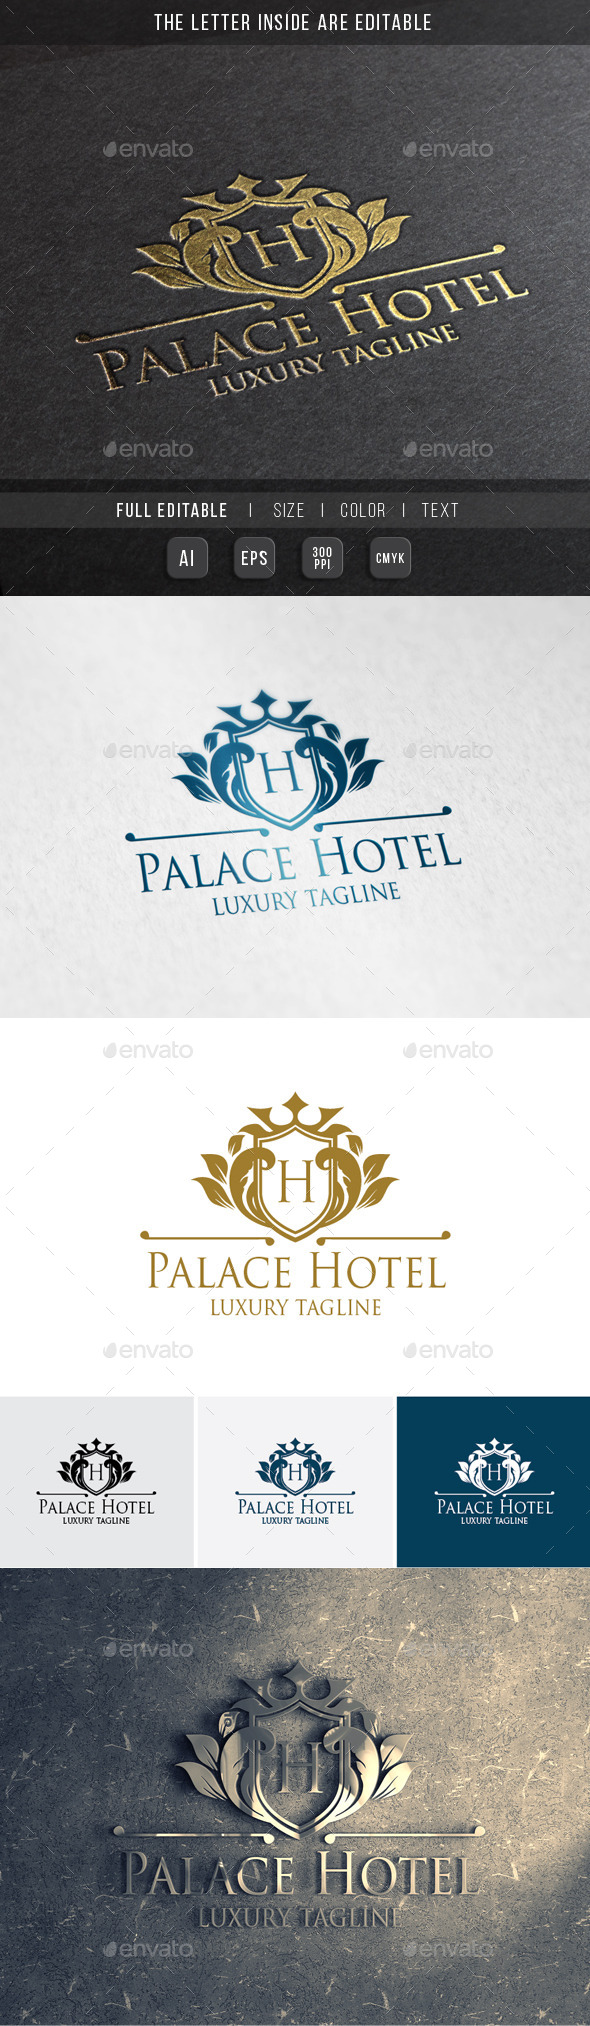 Royal Palace - Luxury Hotel